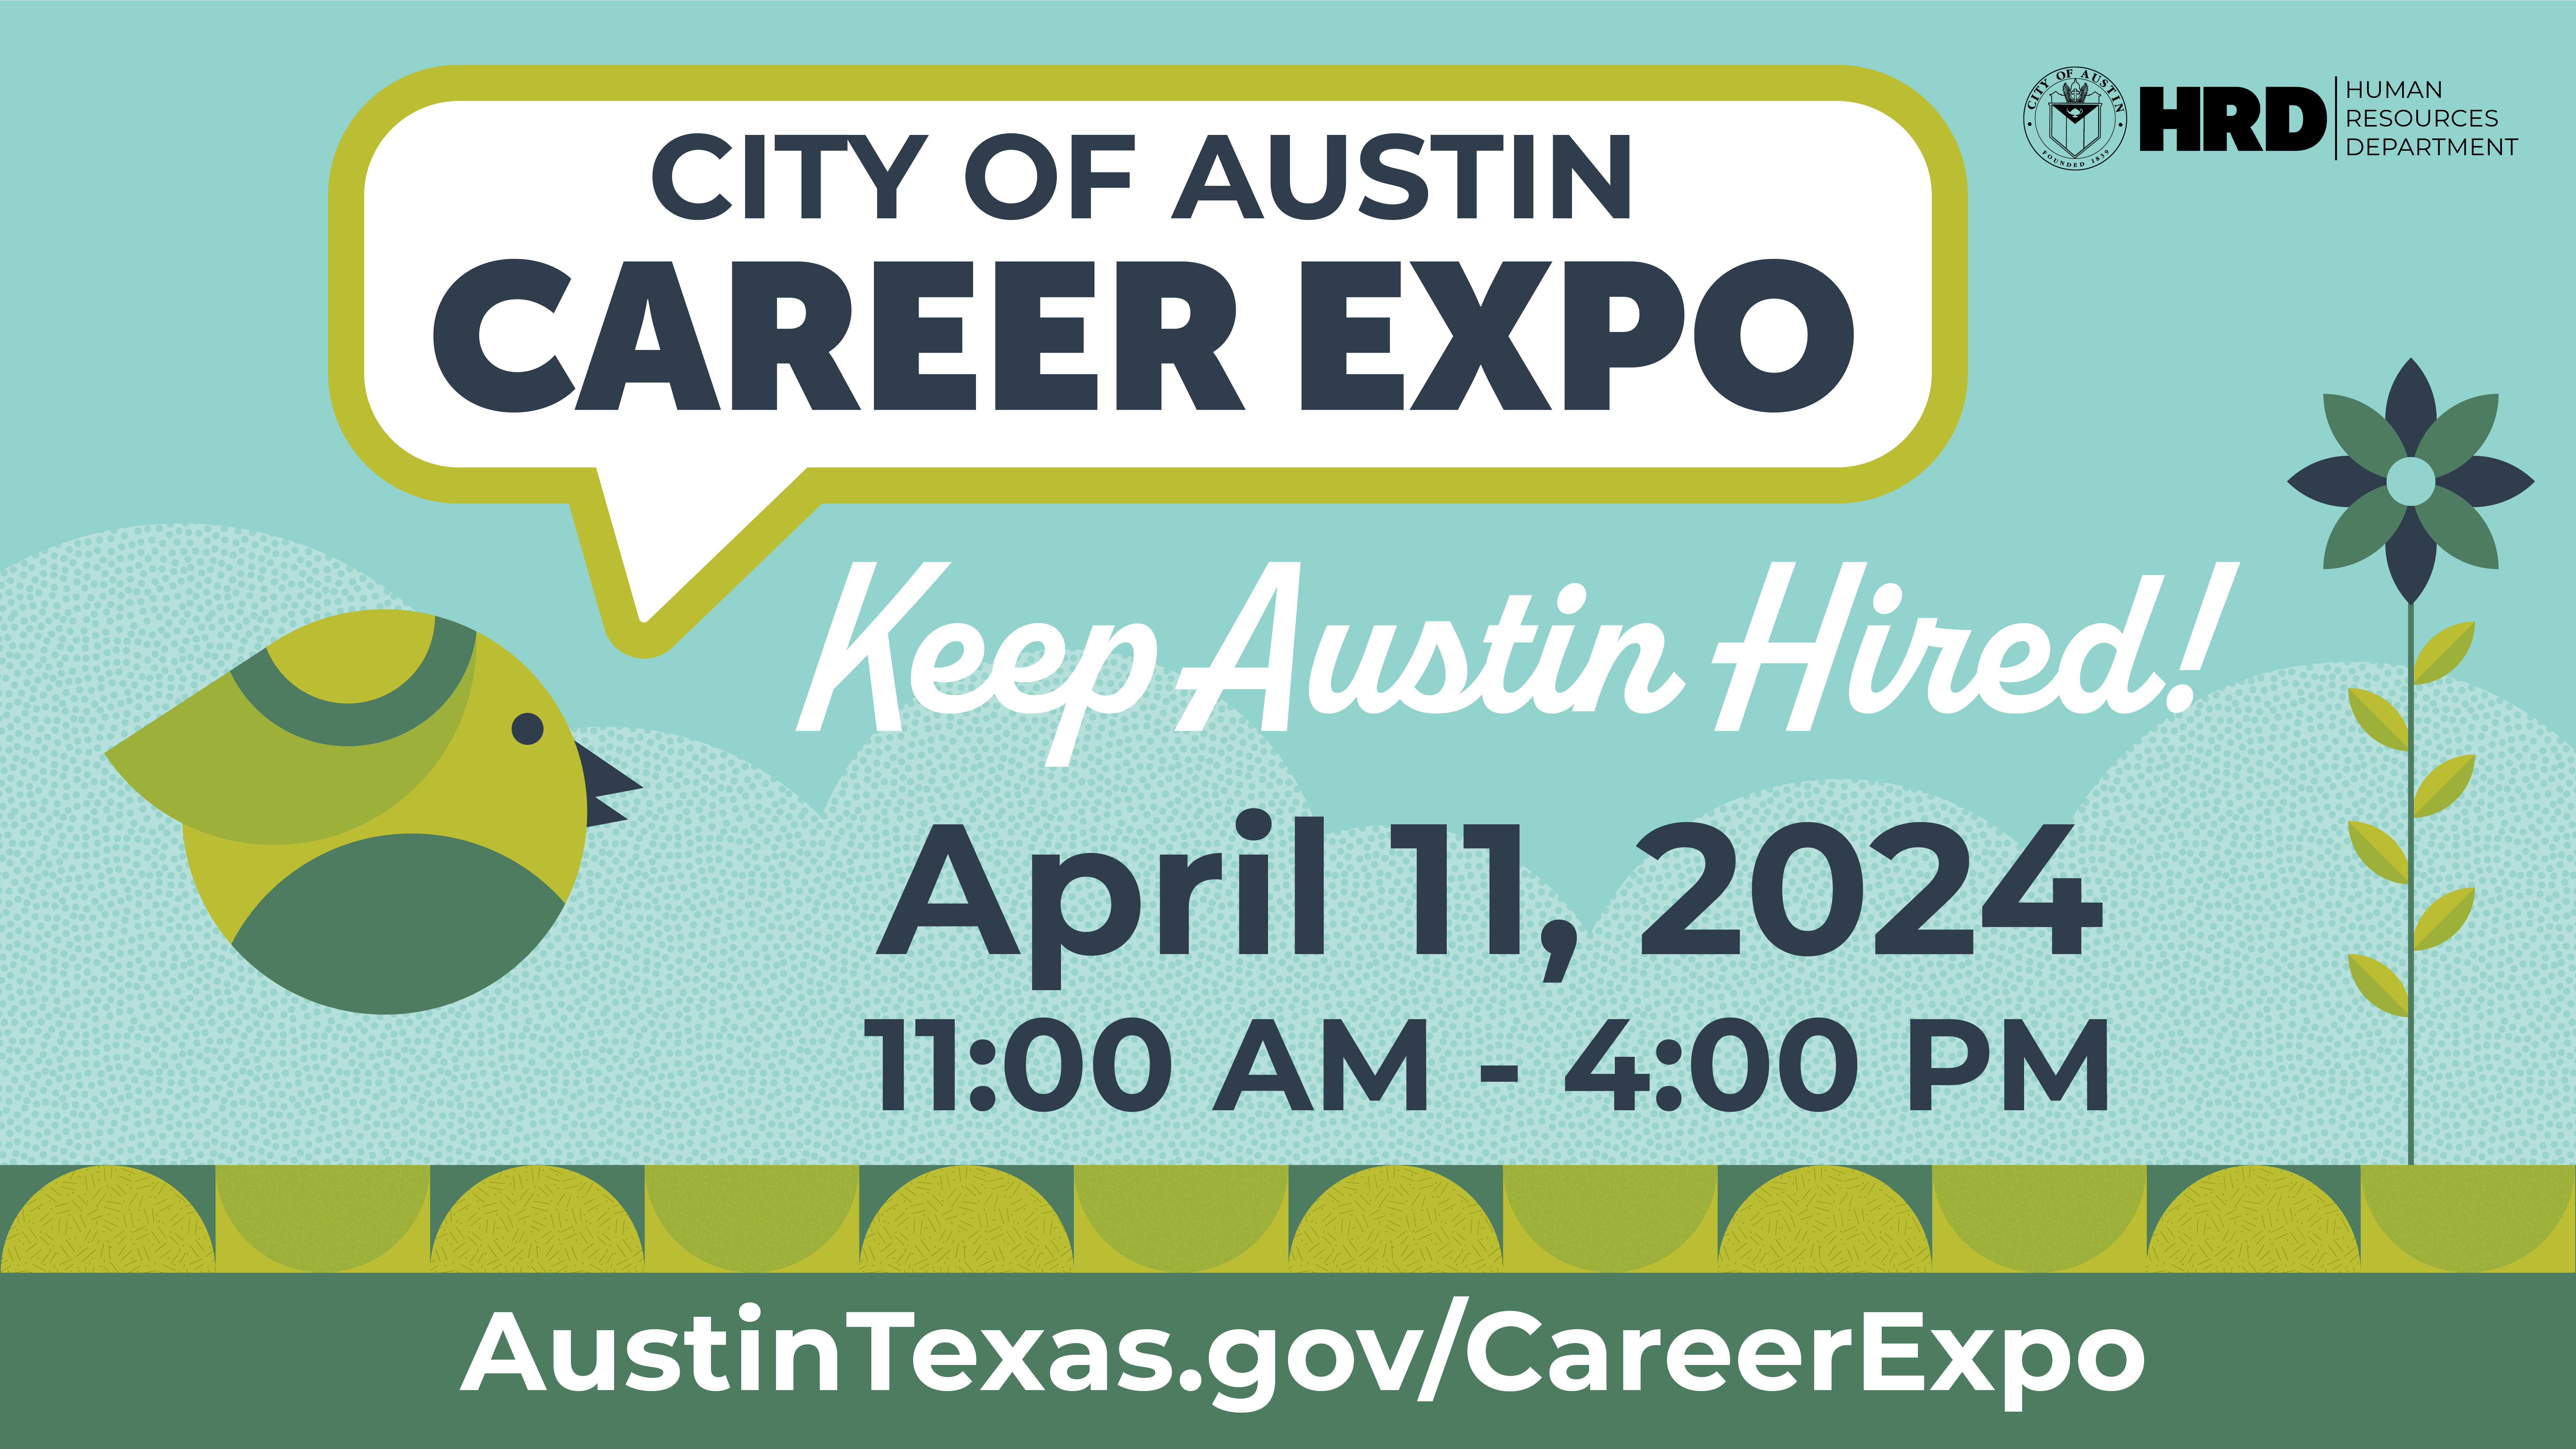 City of Austin Career Expo. Keep Austin Hired! April 11, 2024, 11 am - 4 pm. austin texas do gov slash career expo.